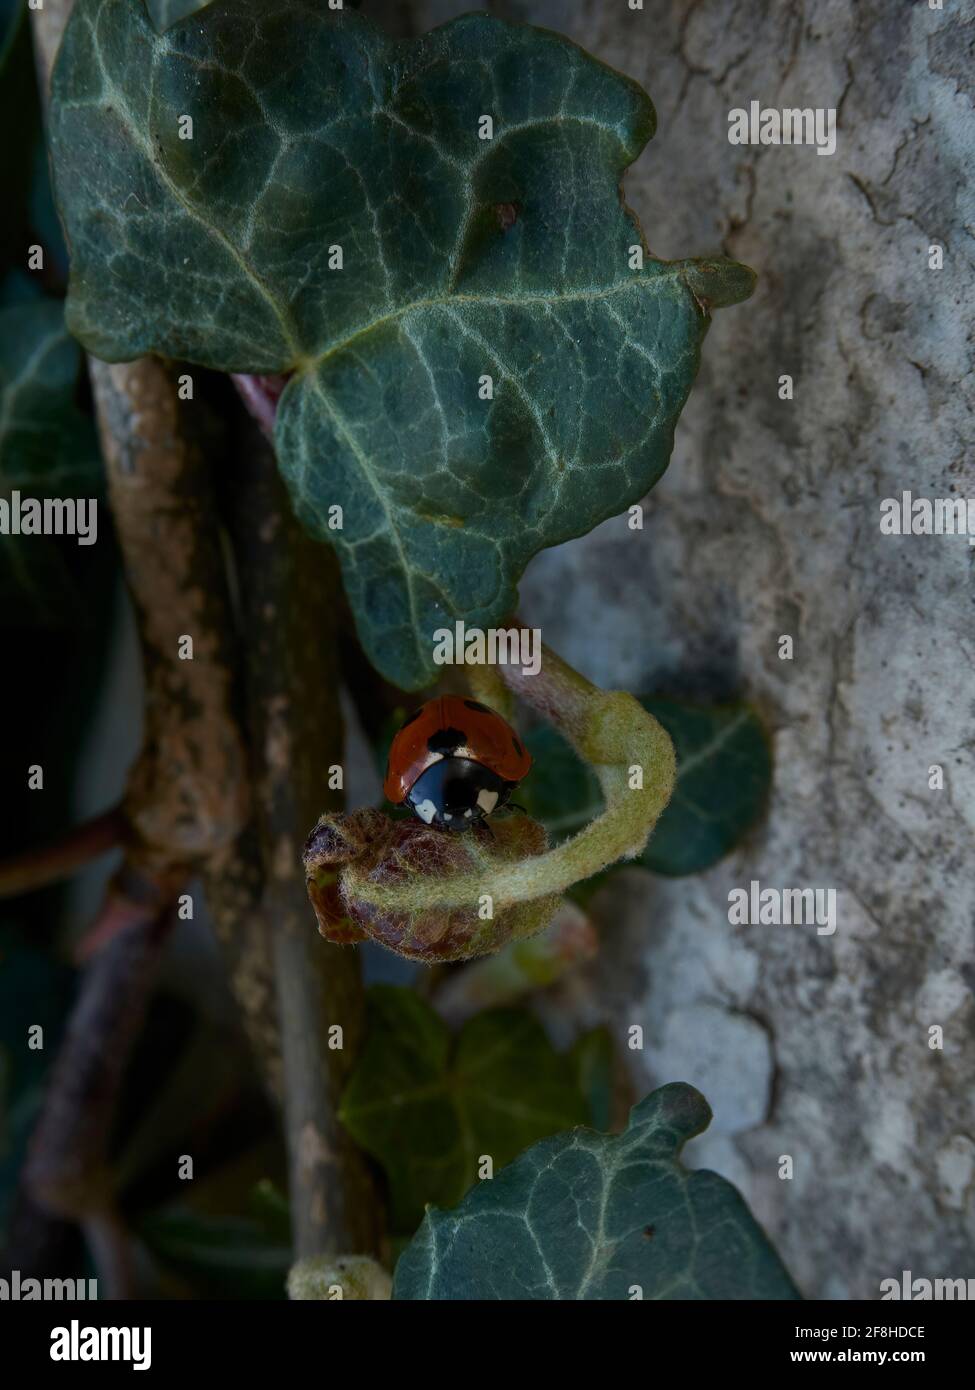 Un ladybird adulto esplora il sottobosco di edera di un giardino residenziale, la conchiglia rossa luminosa che si erge in piacevole contrasto con il verde ricco. Foto Stock